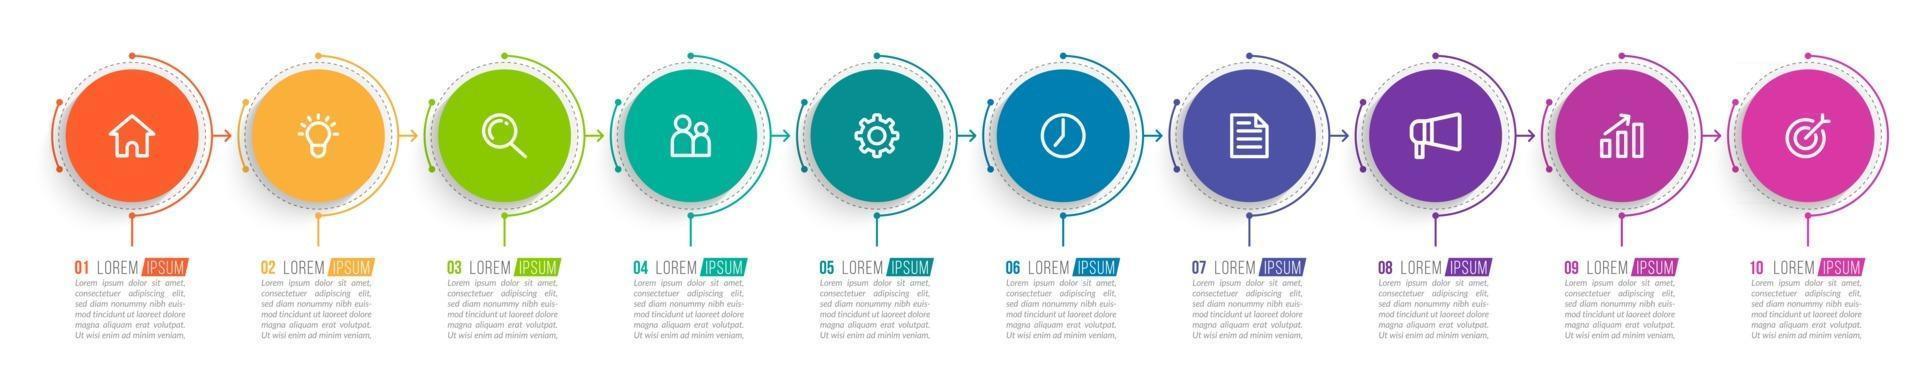 Infografía de 10 pasos para presentación empresarial. vector